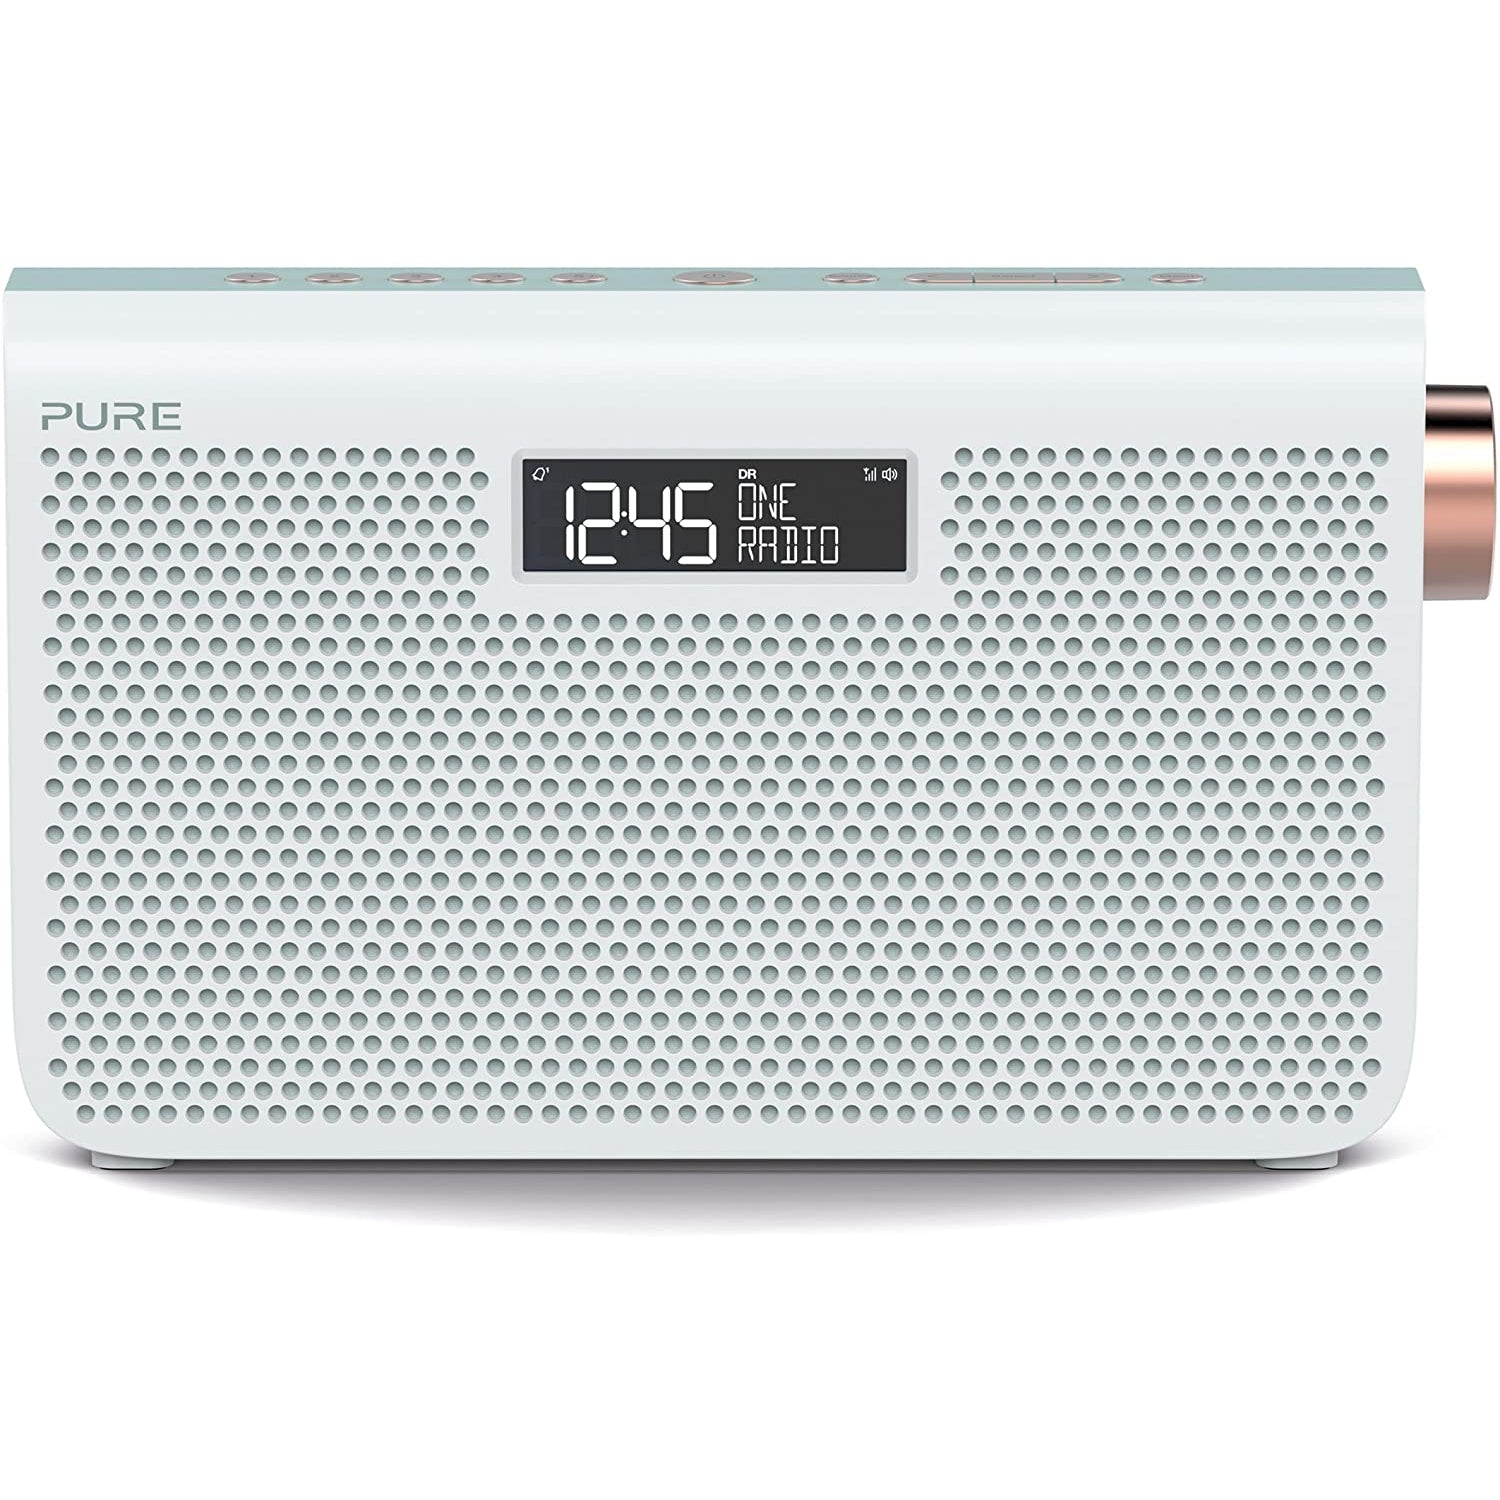 Pure One Maxi Series 3S FM/DAB+/DAB Digital Radio - White